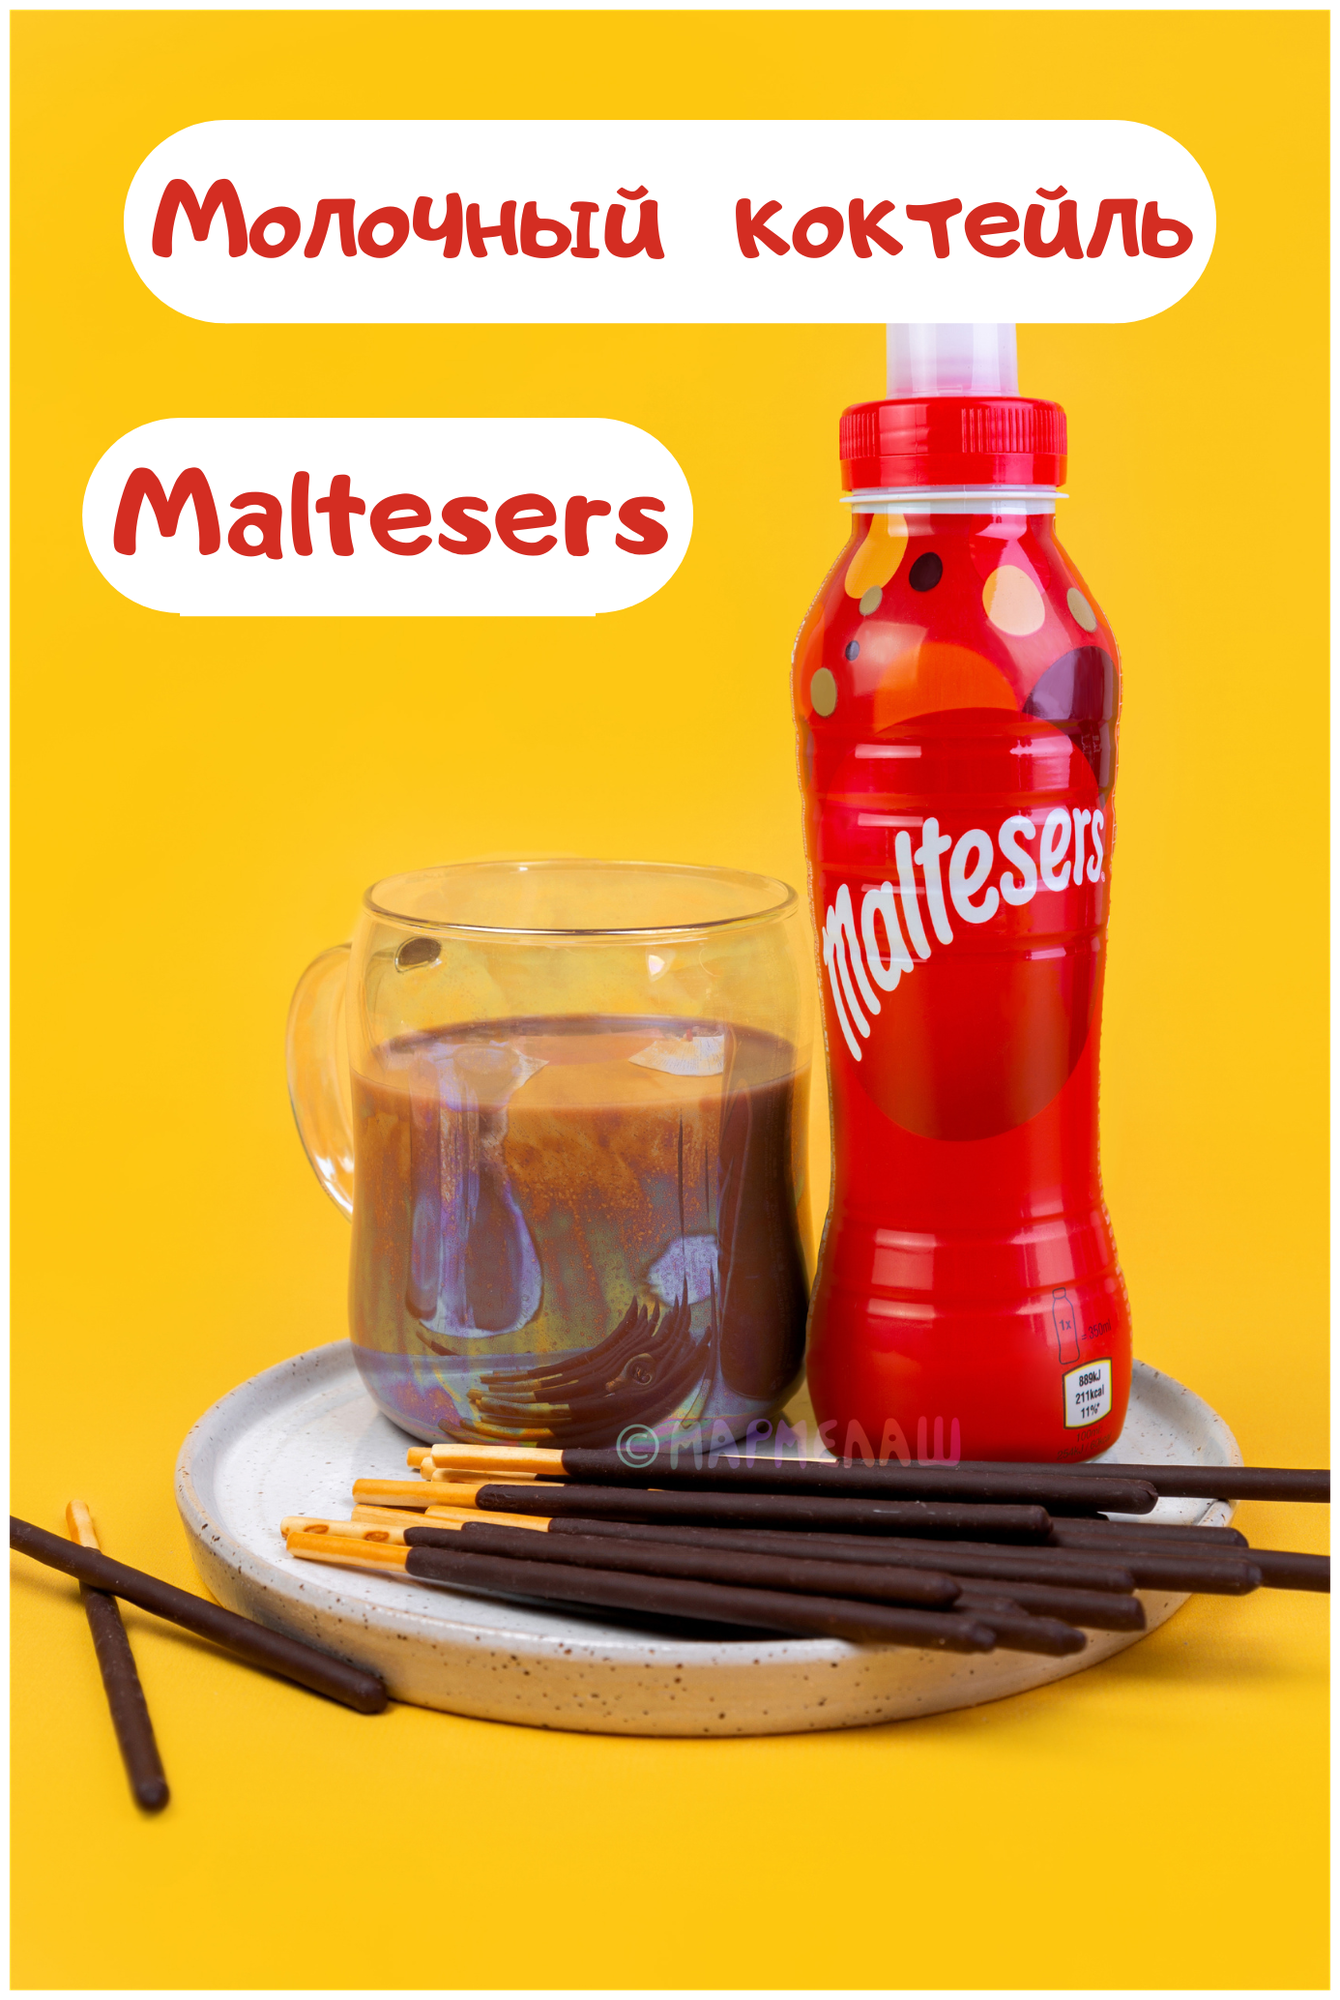 Молочный шоколадный коктейль Maltesers, Мальтизерс - подарок на день рождения, 14 февраля - фотография № 1